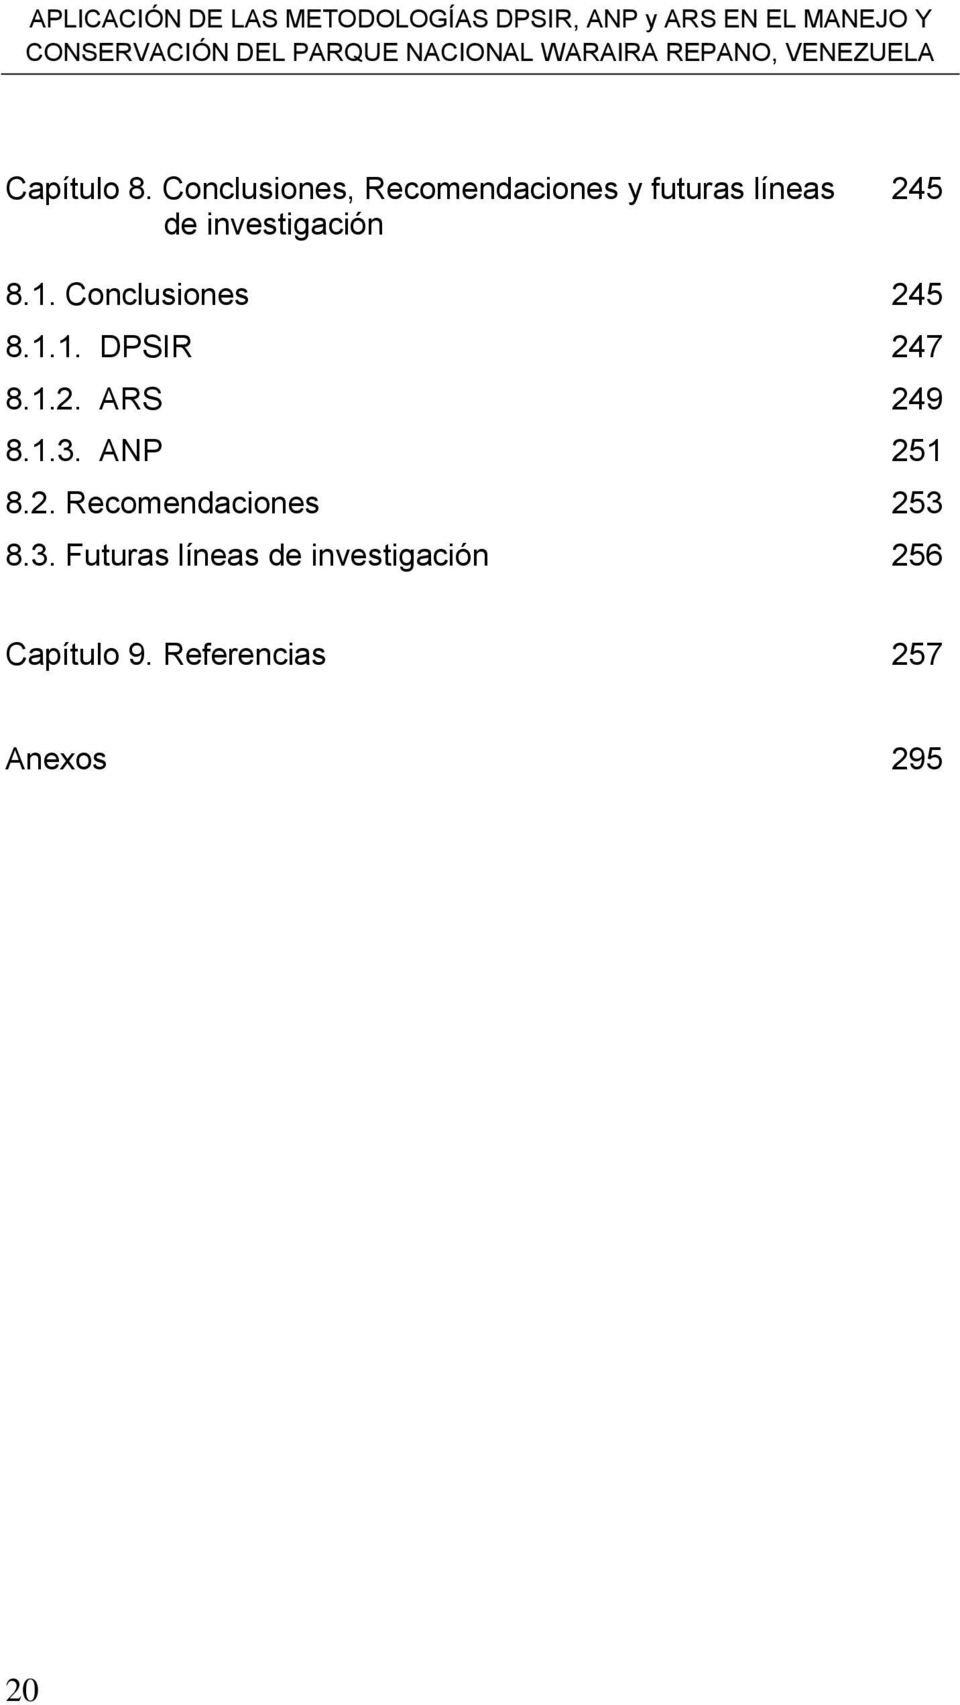 Conclusiones, Recomendaciones y futuras líneas de investigación 245 8.1. Conclusiones 245 8.1.1. DPSIR 247 8.